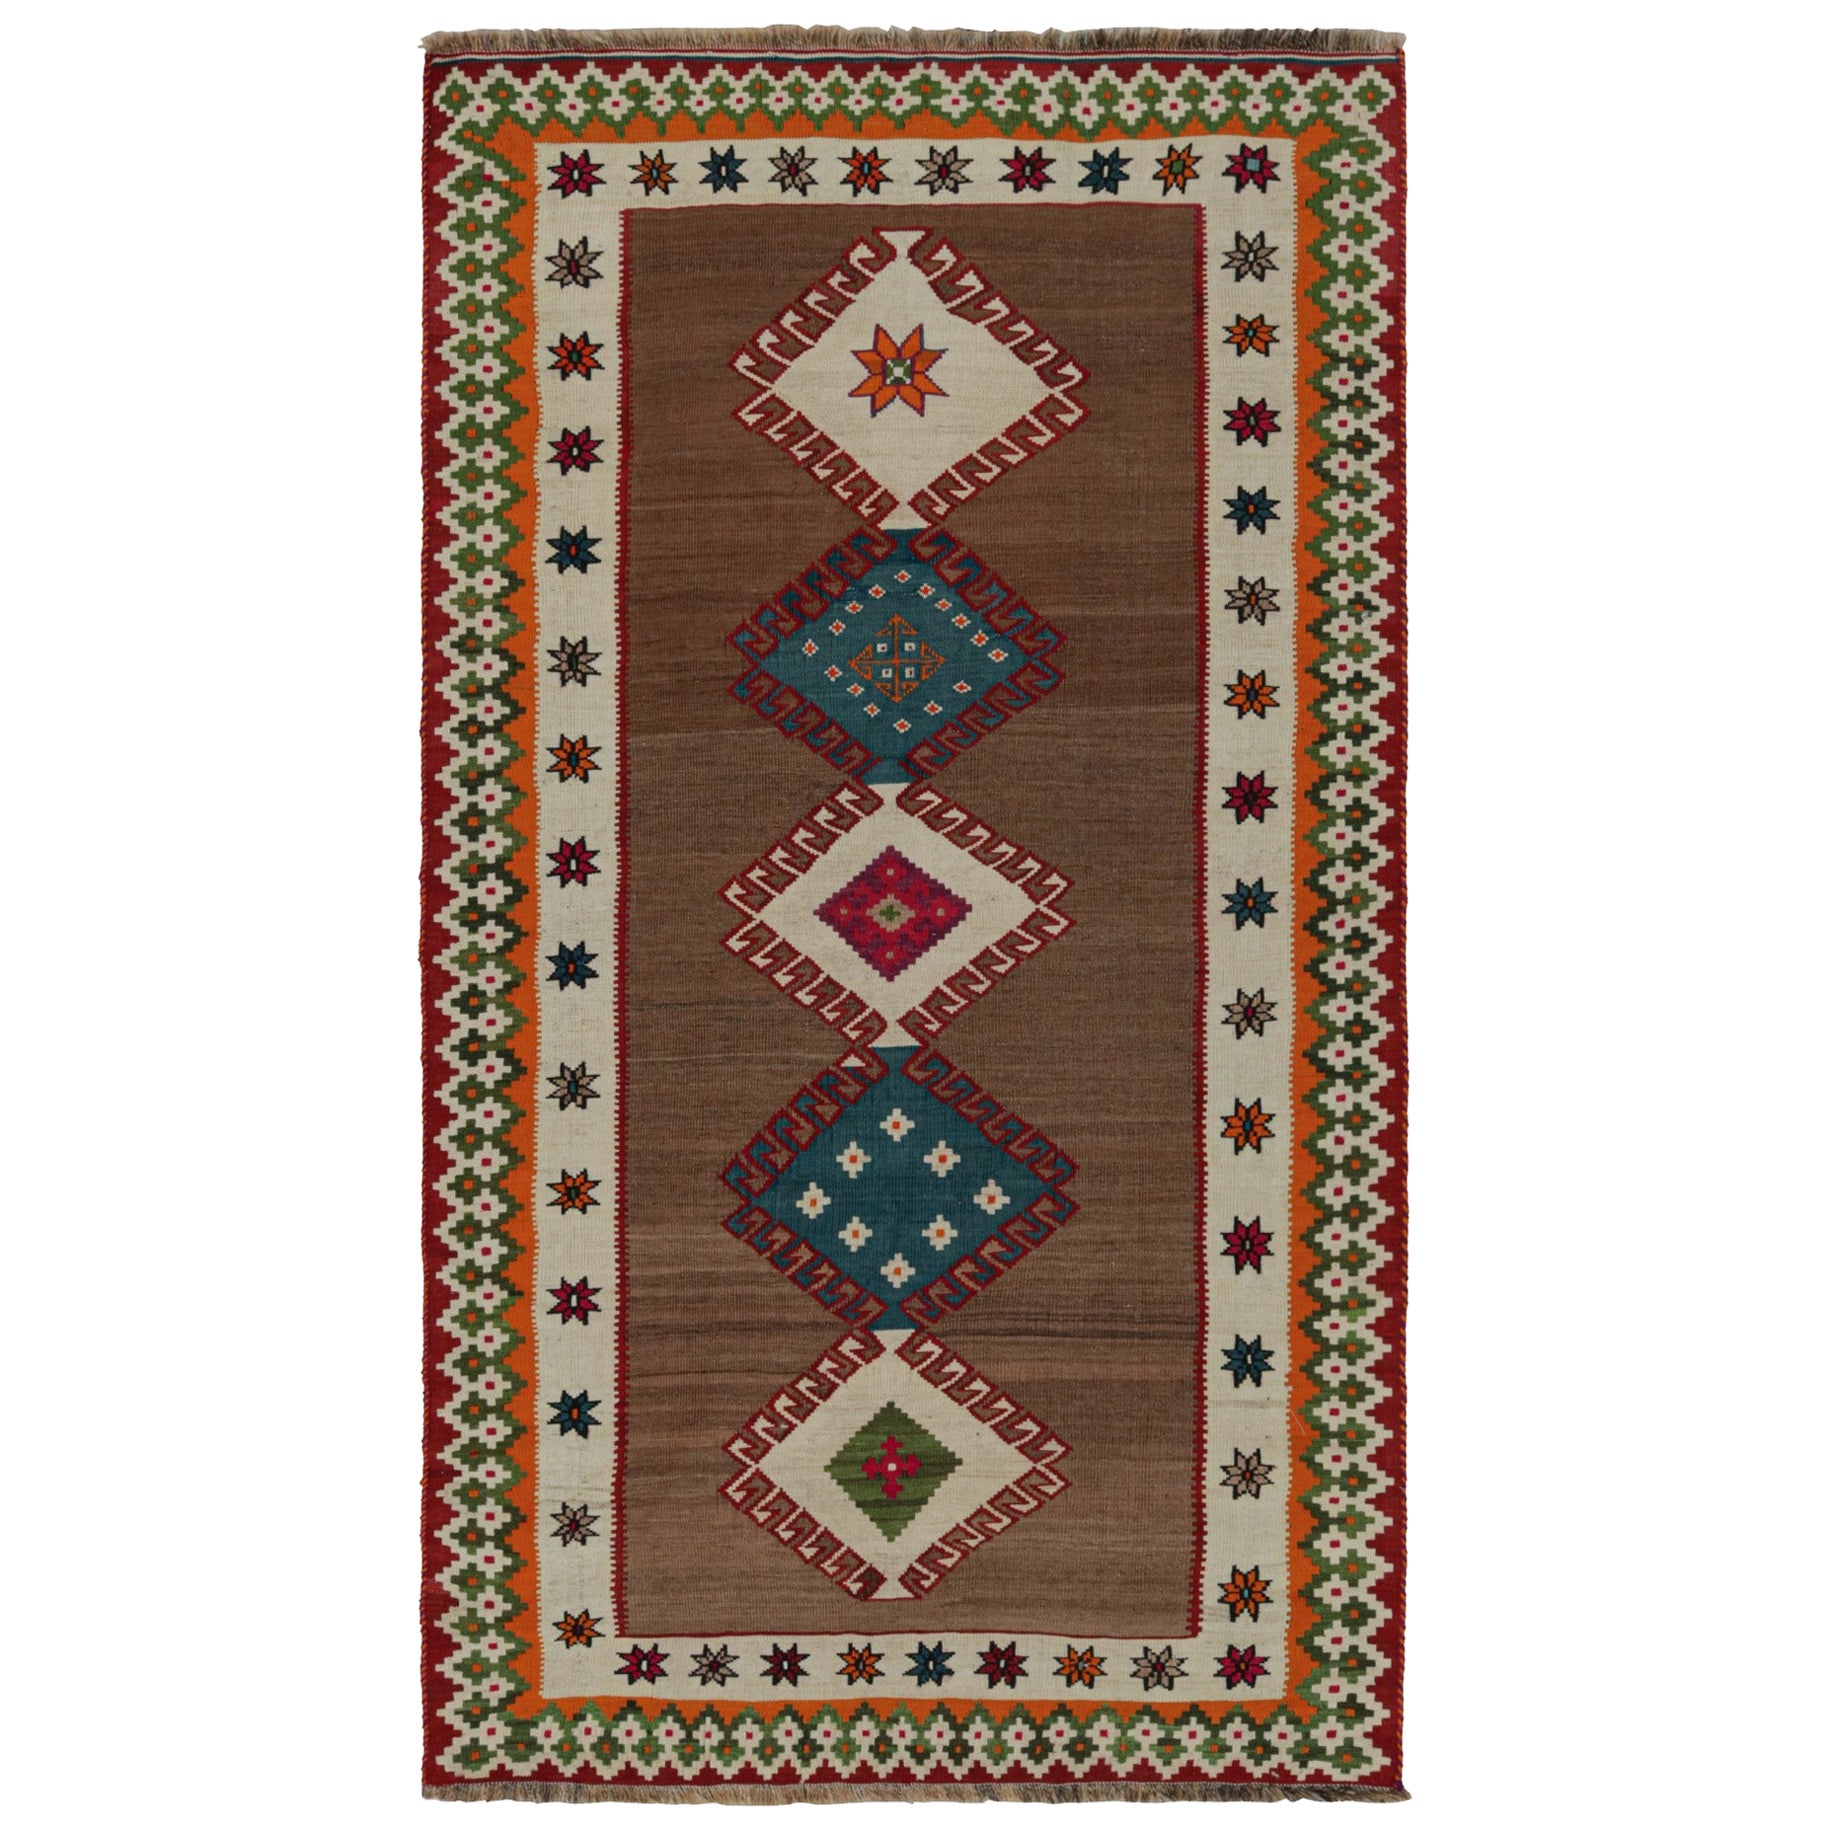 Vintage Tribal Afghan Kilim Rug, with Geometric Patterns, from Rug & Kilim